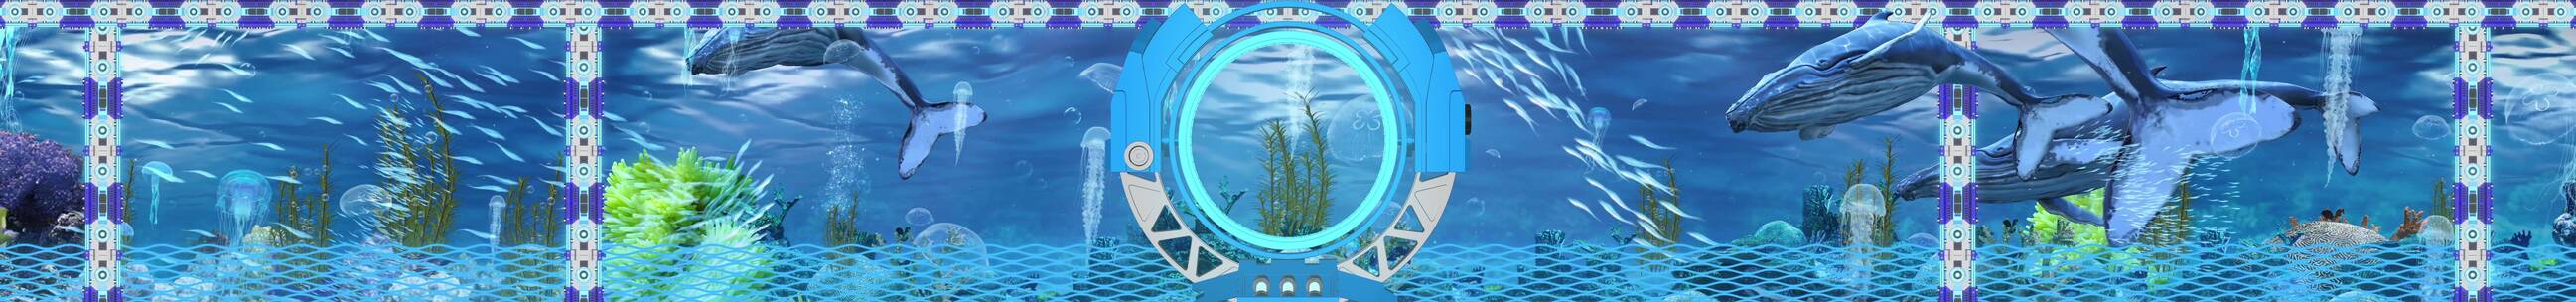 科技海洋 蓝色屏风 海底世界 舞台背景